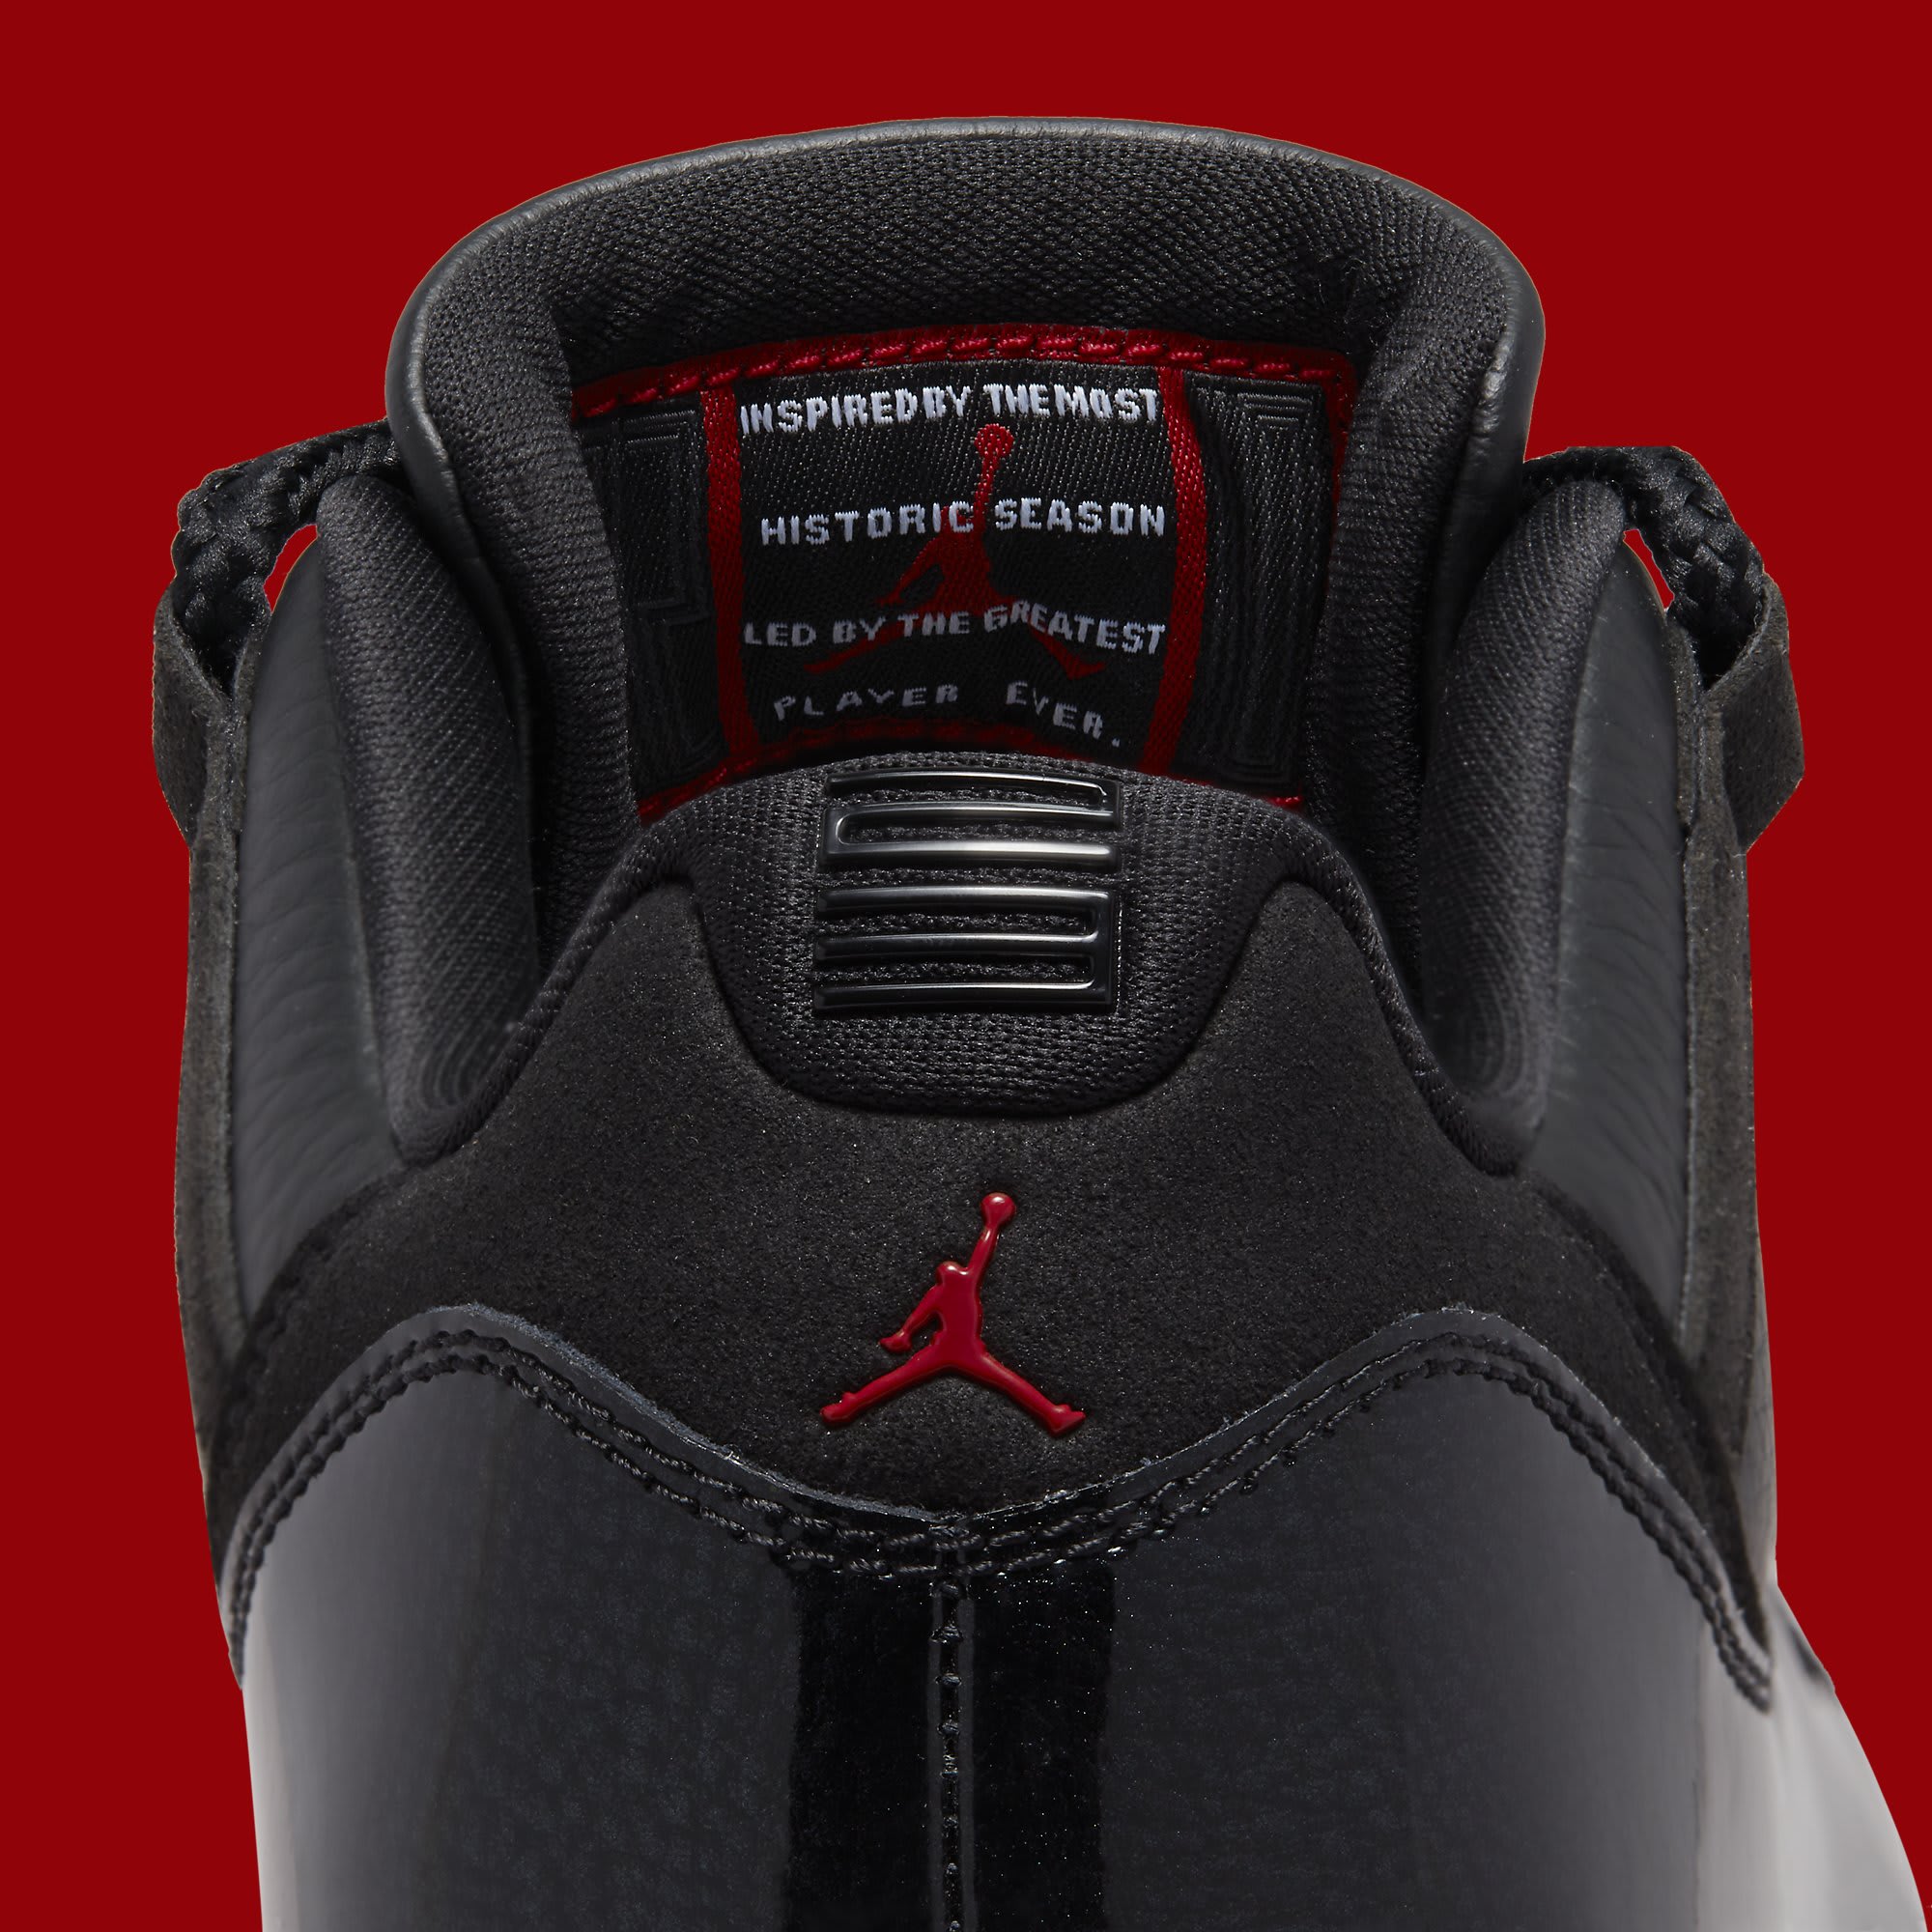 Nike Air Jordan 11 Low 72–10 Official Release